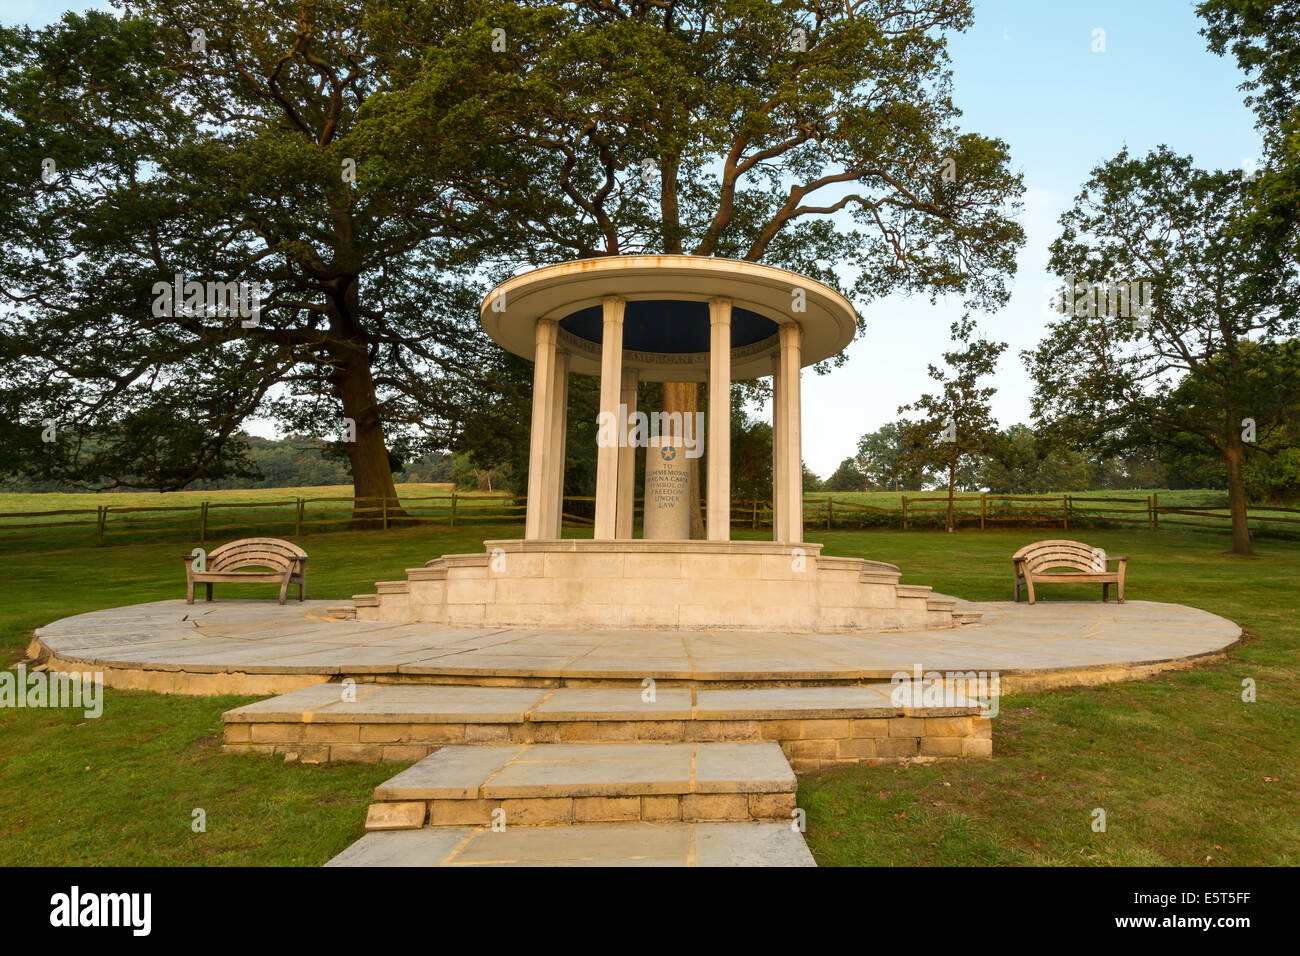 La Grande Charte à Runnymede Memorial, Surrey, Angleterre, Royaume-Uni. Le mémorial a été créé par l'American Bar Association en 1957 Banque D'Images